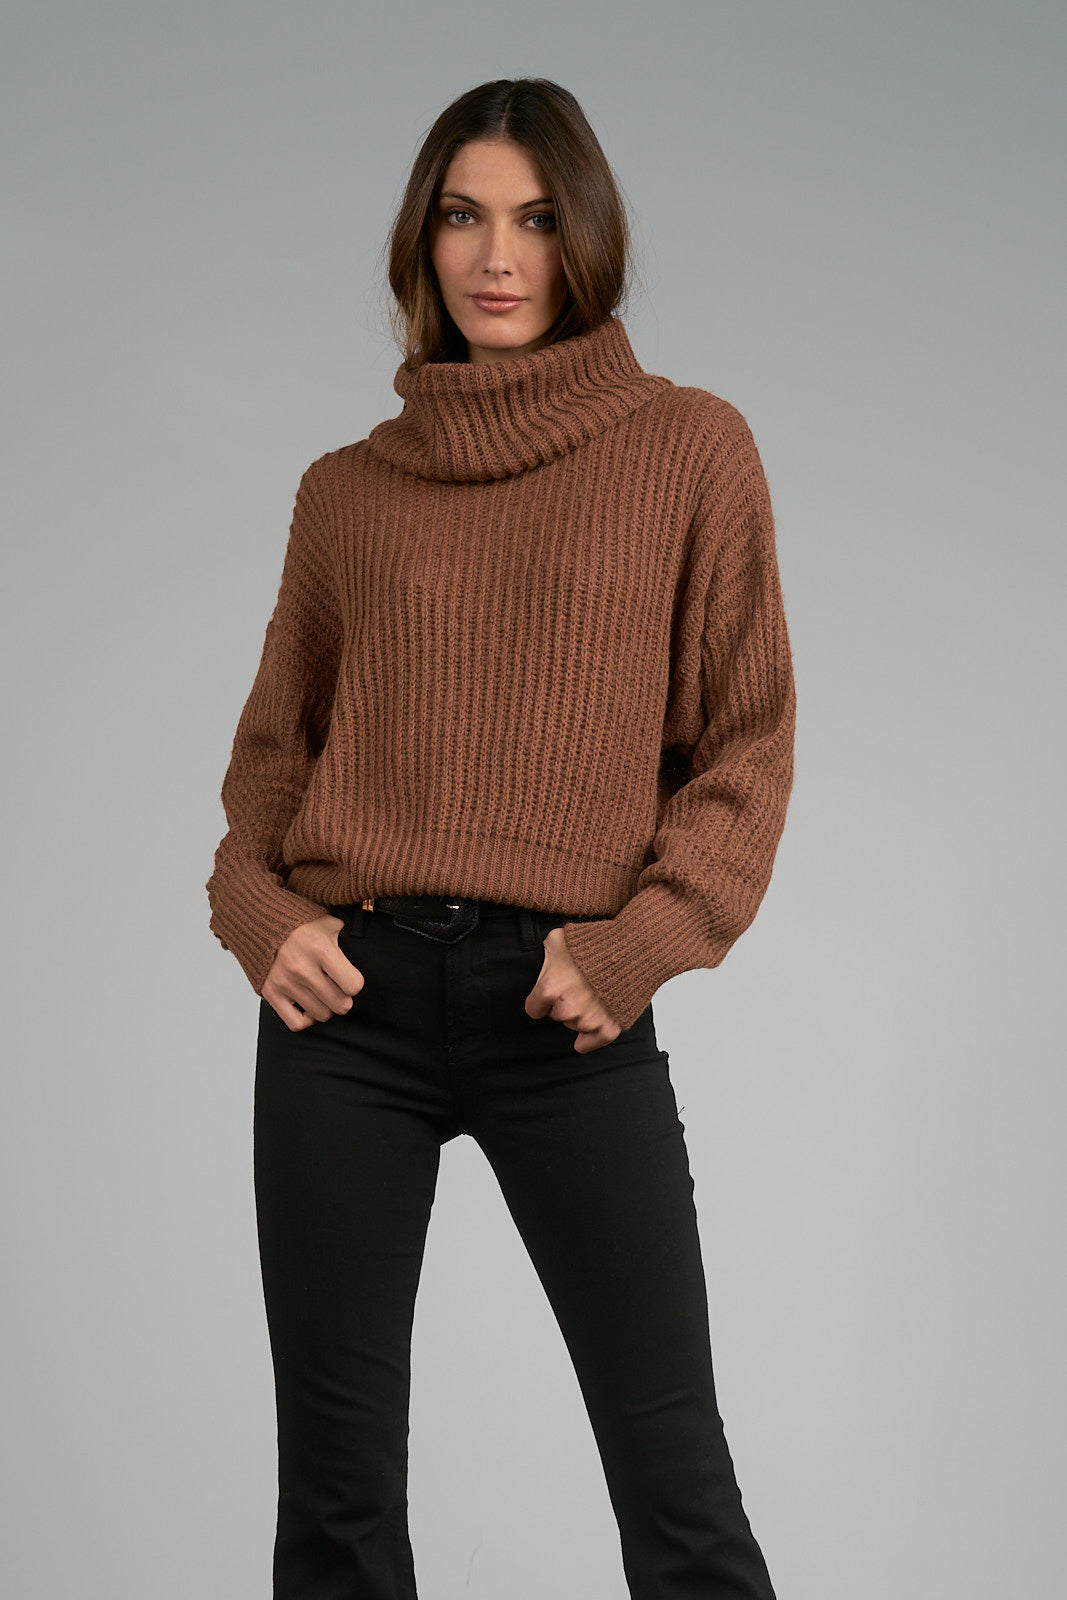 Elan Cowl Neck Sweater